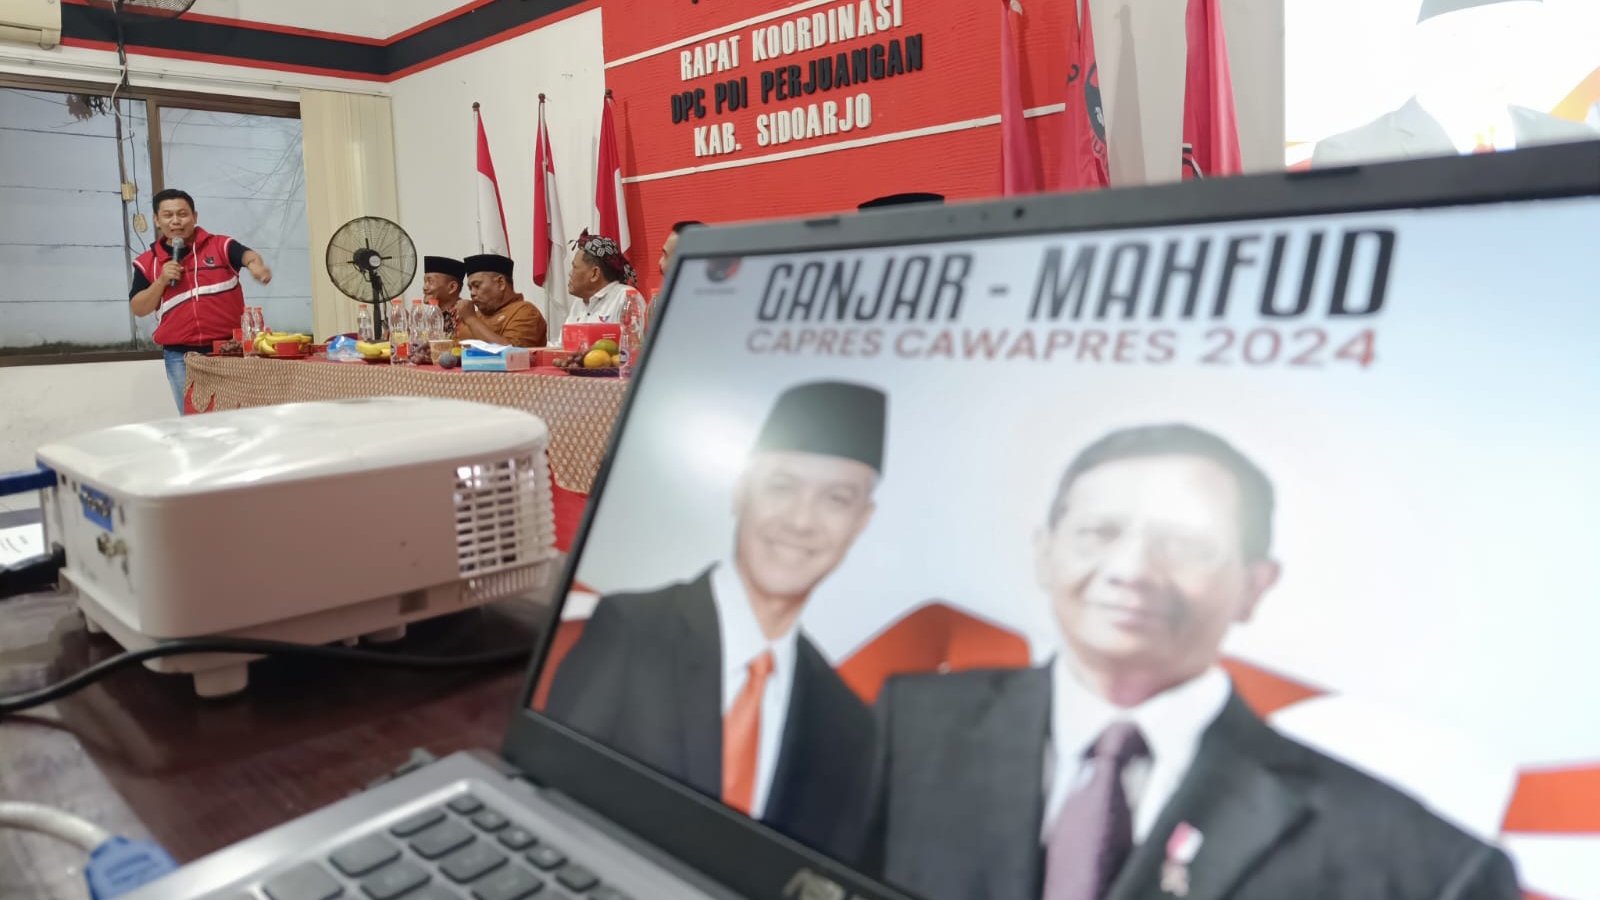 PDIP Sidoarjo Kumpulkan Partai Koalisi Menangkan Ganjar-Mahfud Satu Putaran